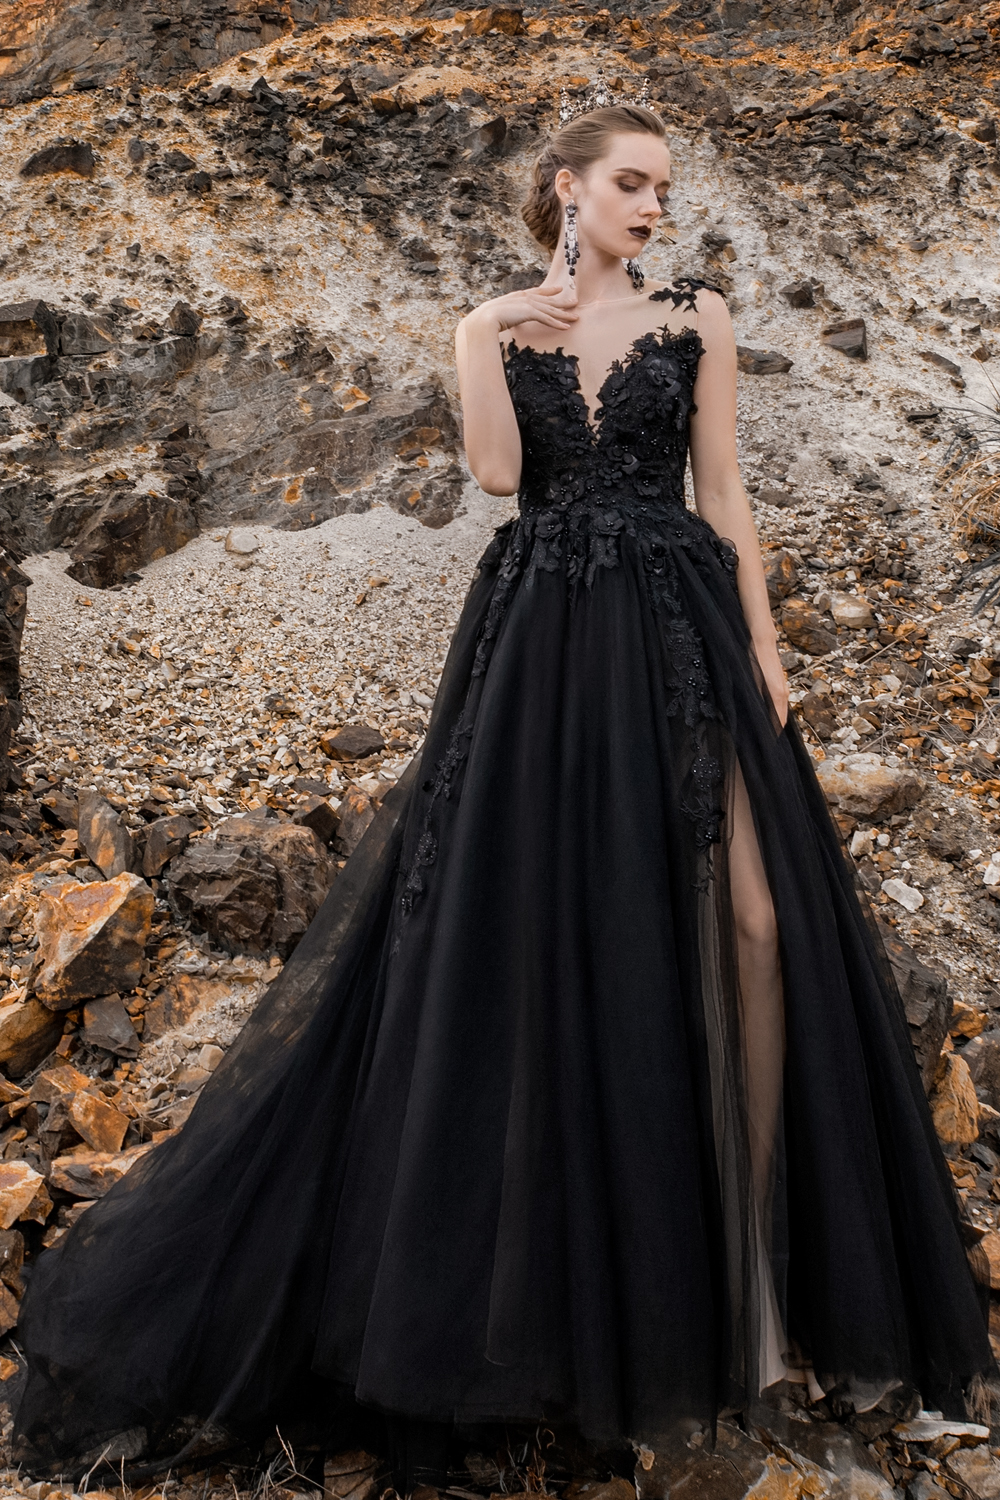 a qoman in a black wedding dres is posing on a coast